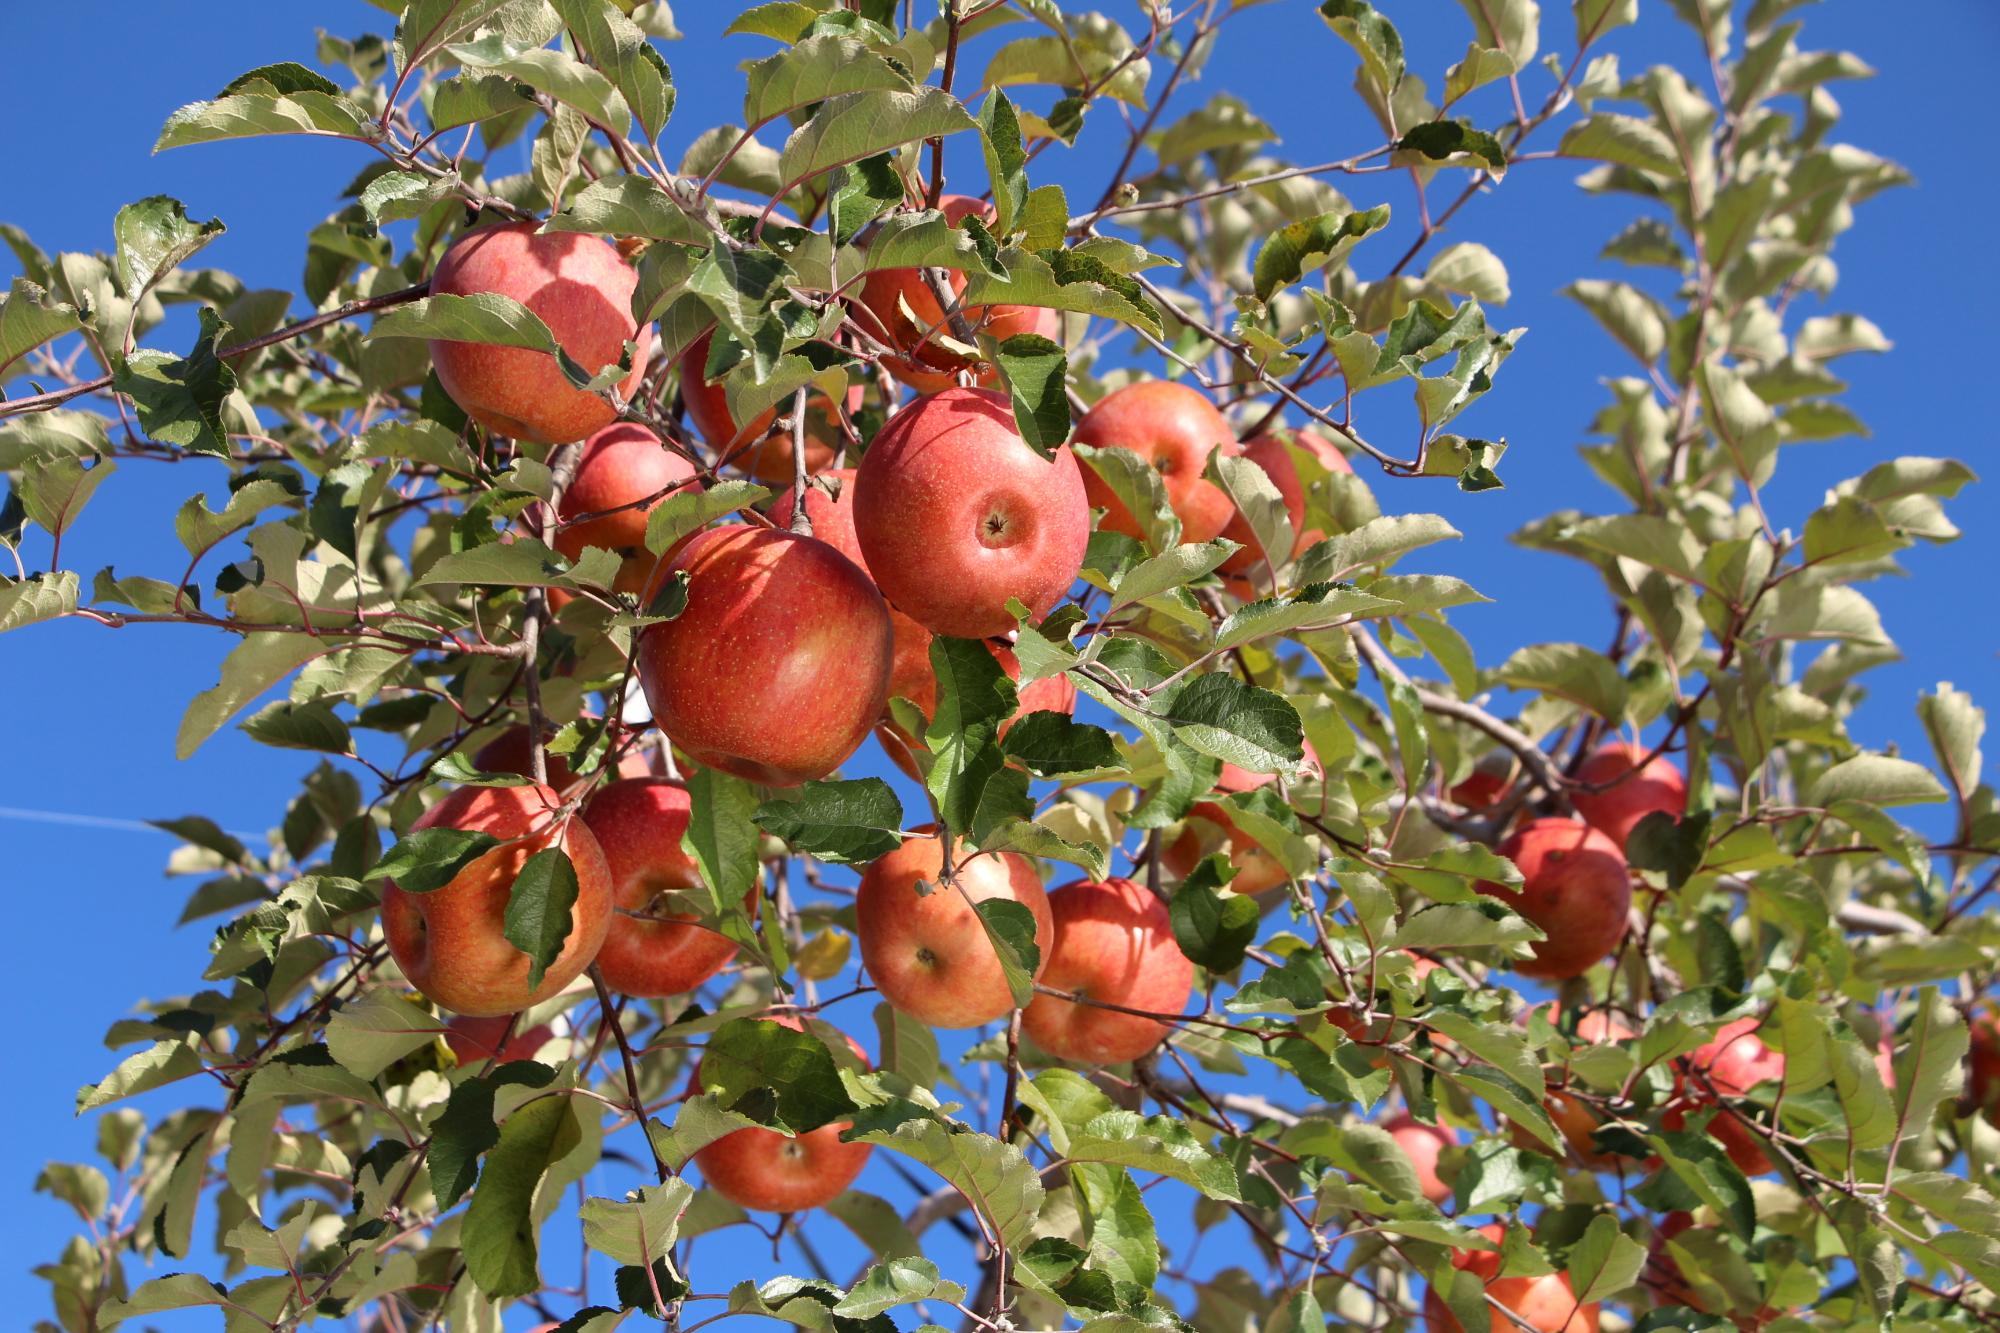 赤いリンゴを実らせた立科りんごの木を下から見上げるように写した写真